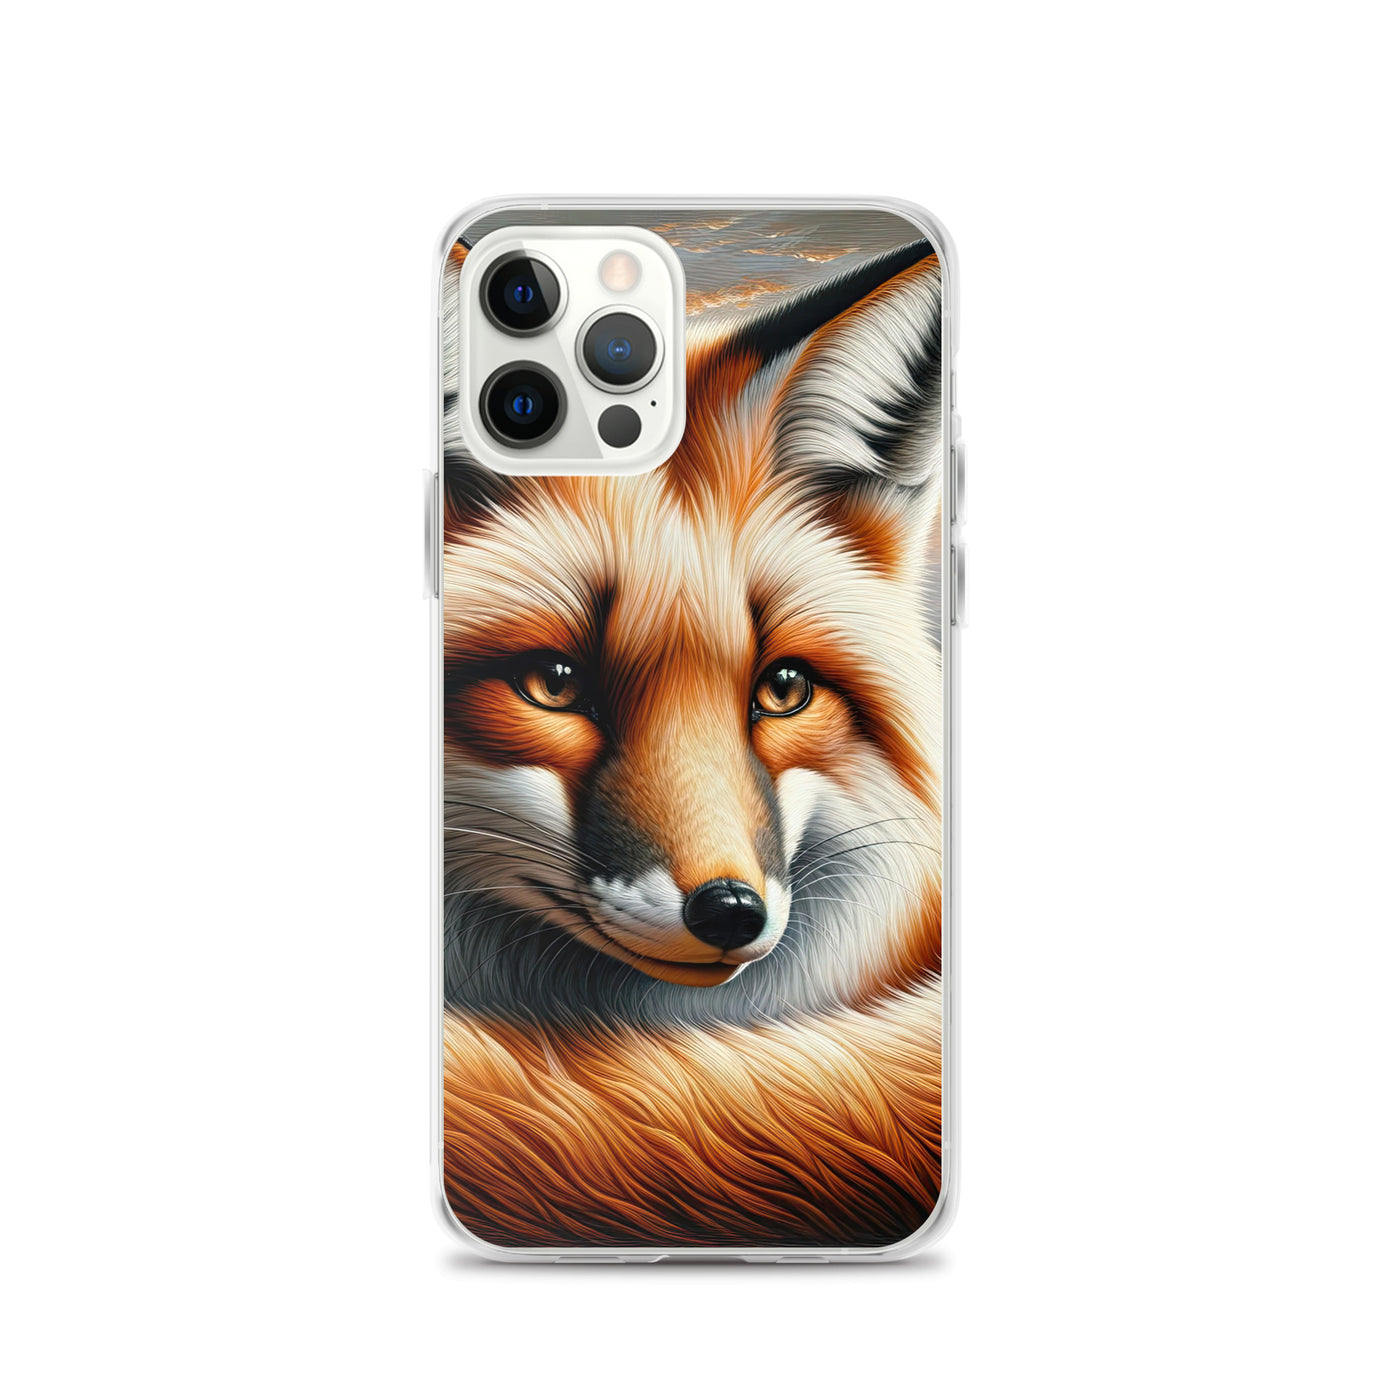 Ölgemälde eines nachdenklichen Fuchses mit weisem Blick - iPhone Schutzhülle (durchsichtig) camping xxx yyy zzz iPhone 12 Pro